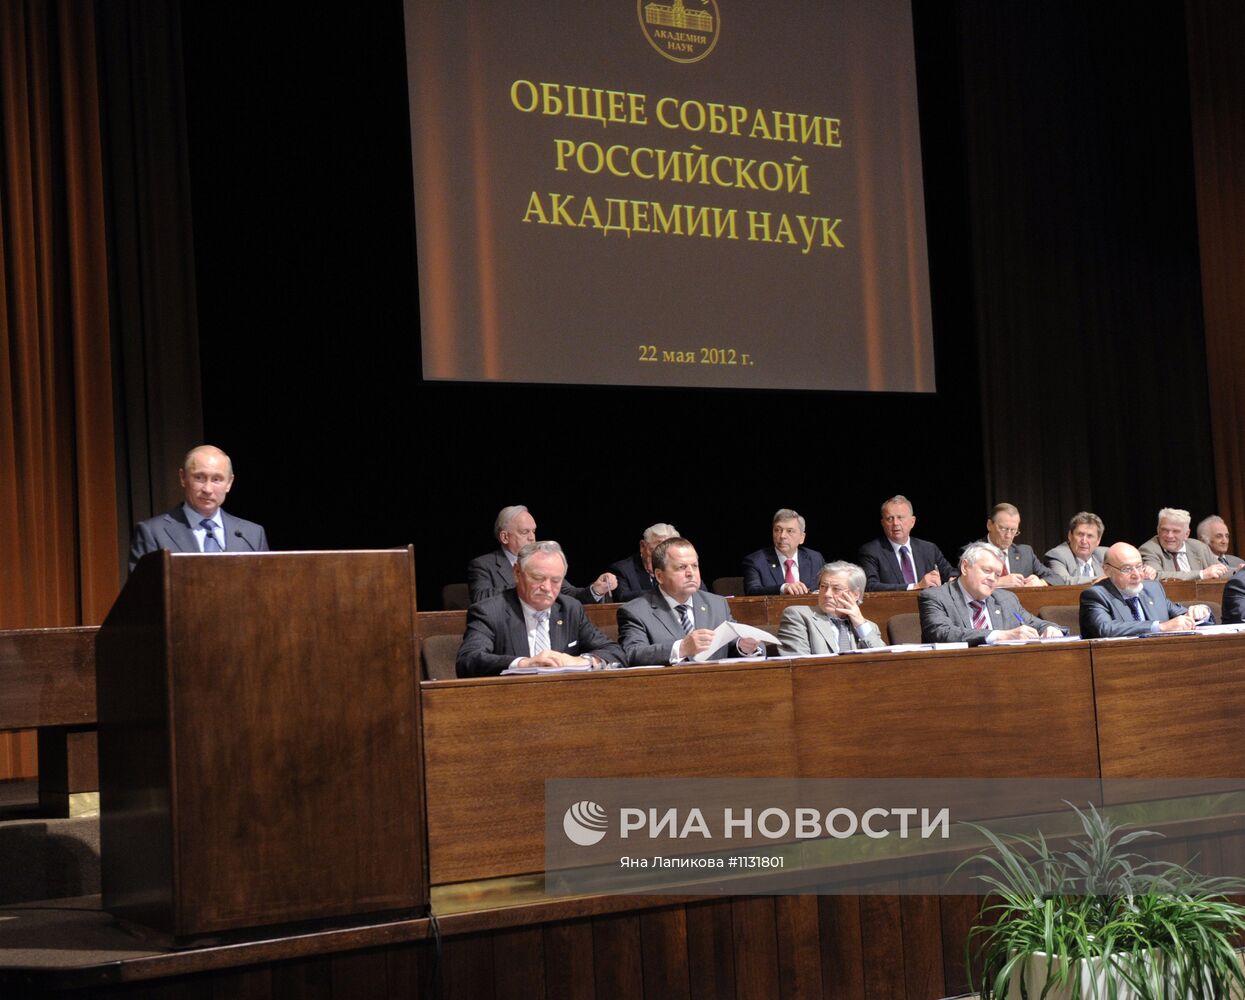 В.Путин принял участие в общем собрании РАН